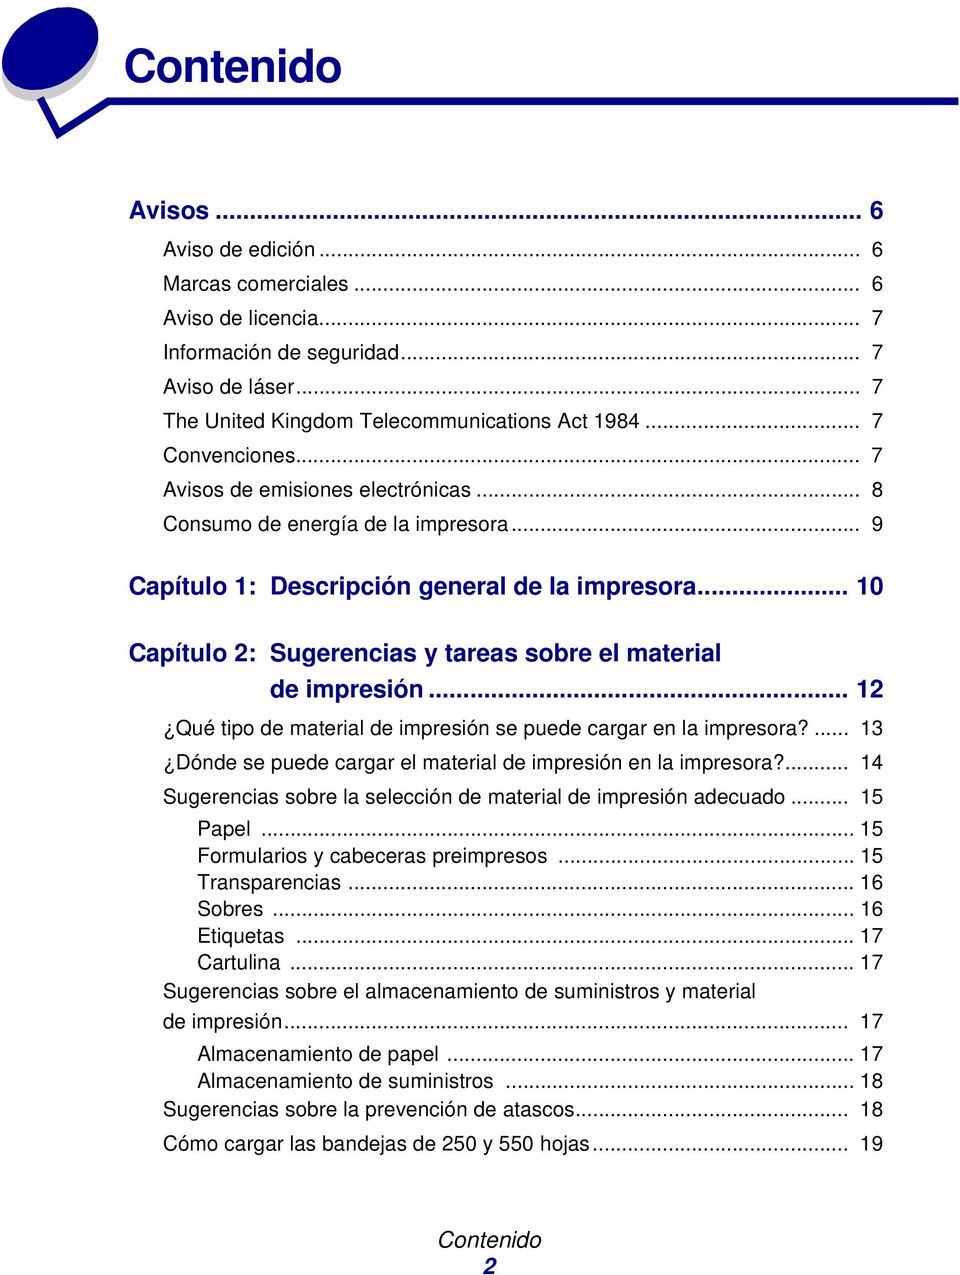 .. 10 Capítulo 2: Sugerencias y tareas sobre el material de impresión... 12 Qué tipo de material de impresión se puede cargar en la impresora?